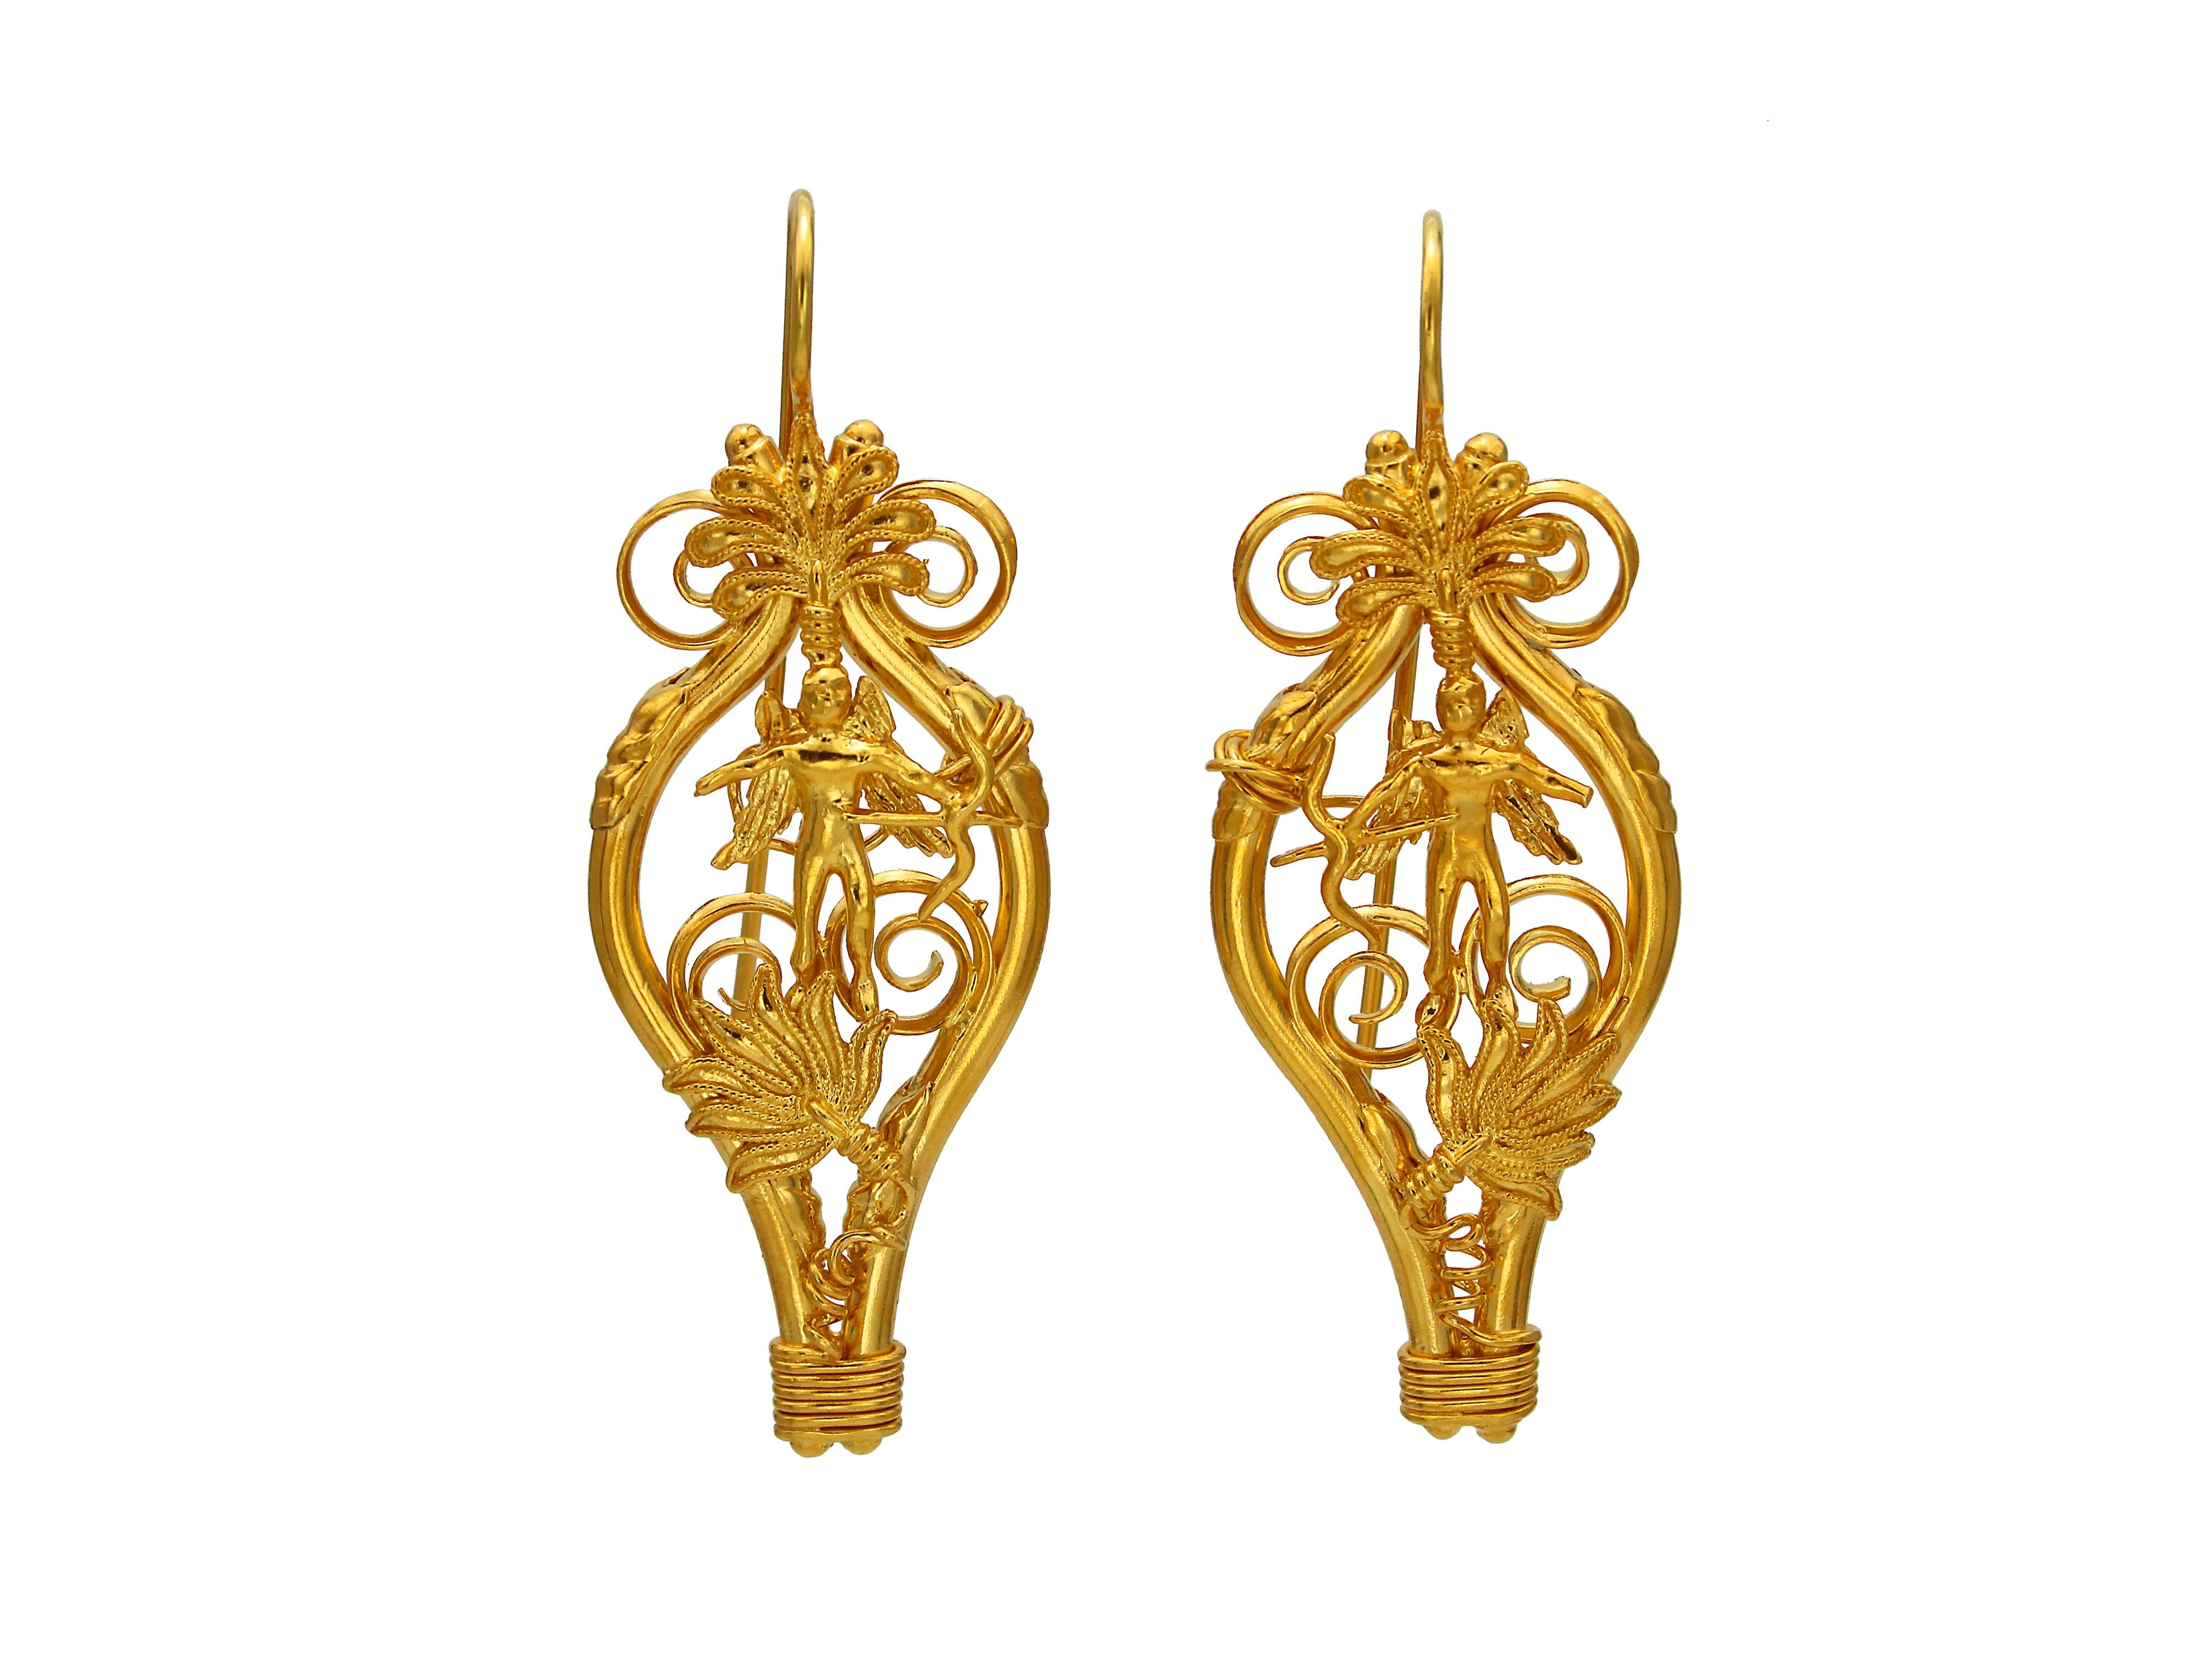 EROS (Gott der Liebe) Ohrringe. Majestätisches Paar Ohrringe aus 22-karätigem Gold, inspiriert von der ursprünglichen Halskette aus der Mitte des 4. Jahrhunderts v. Chr., die bei Ausgrabungen in Mazedonien gefunden wurde, wo sich der Palast von